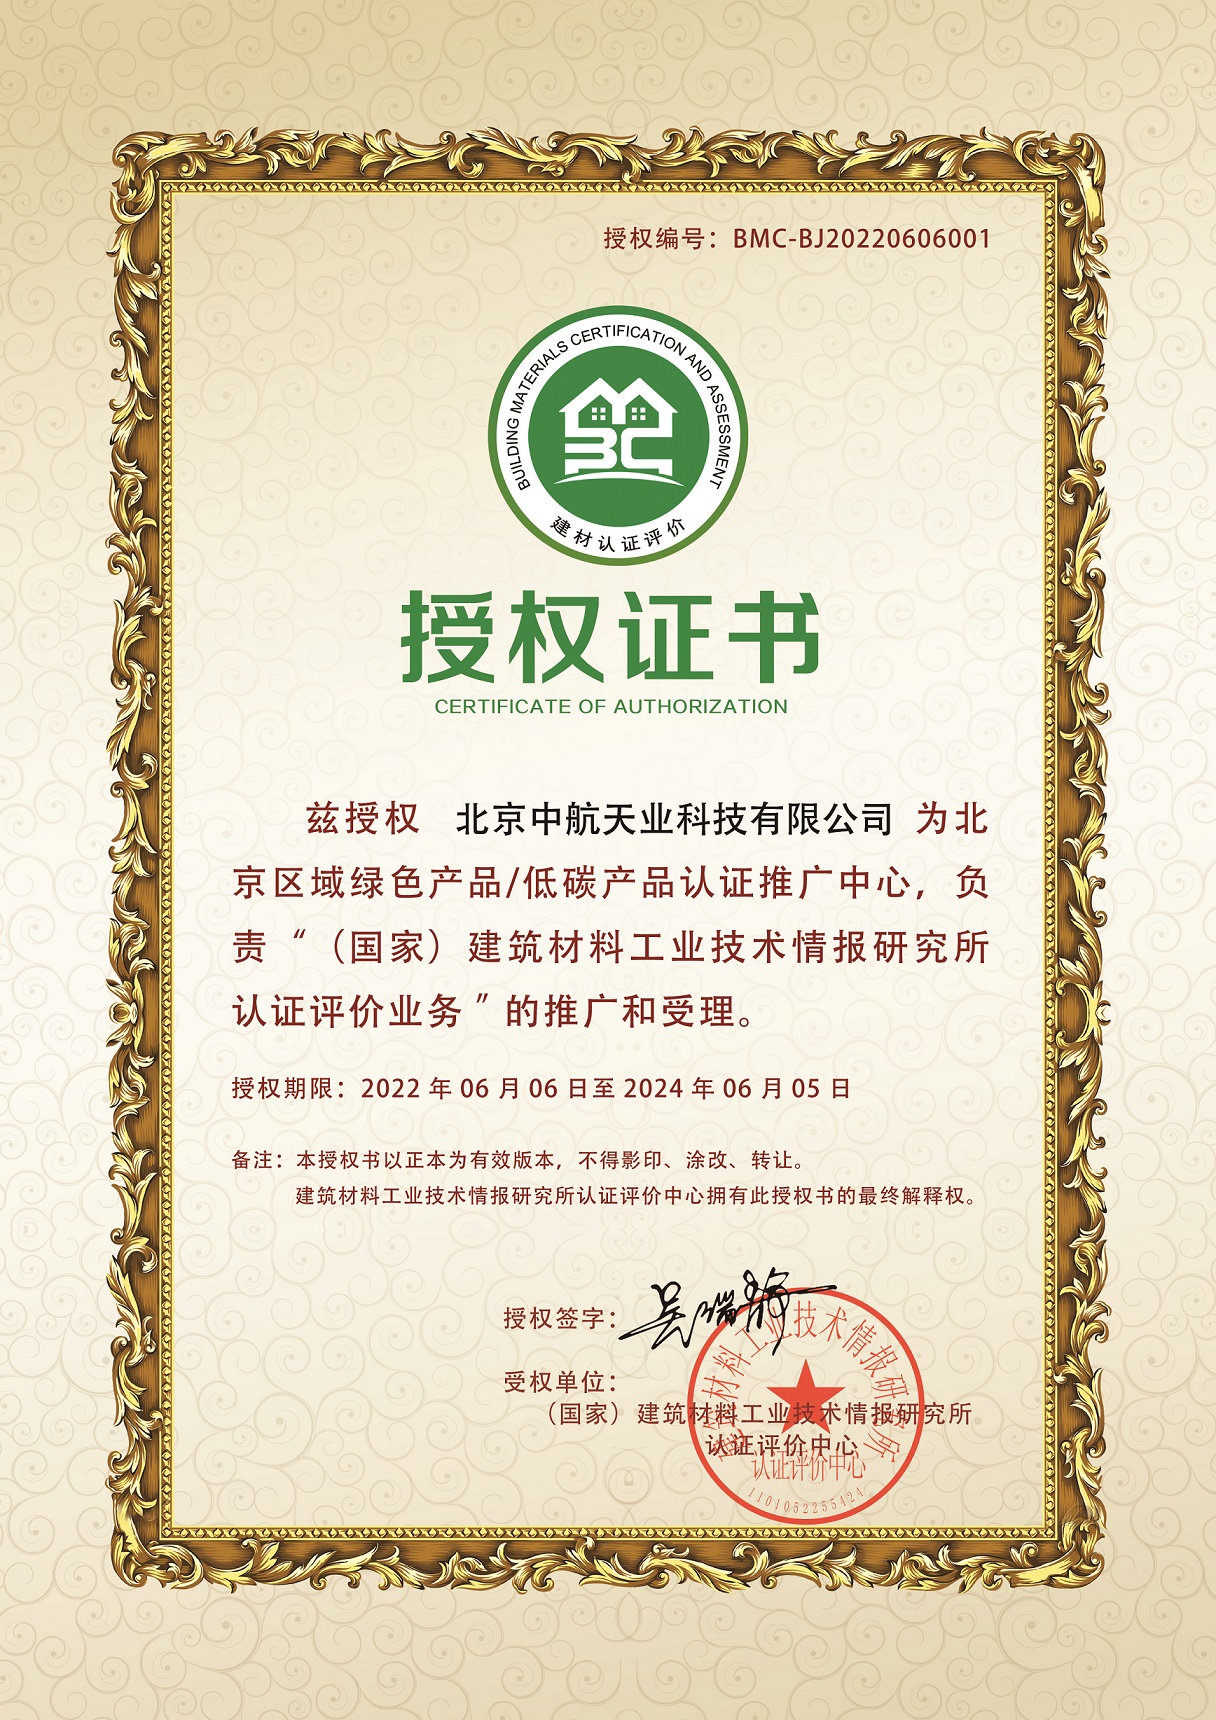 中航天业喜获国家绿色建材产品认证业务